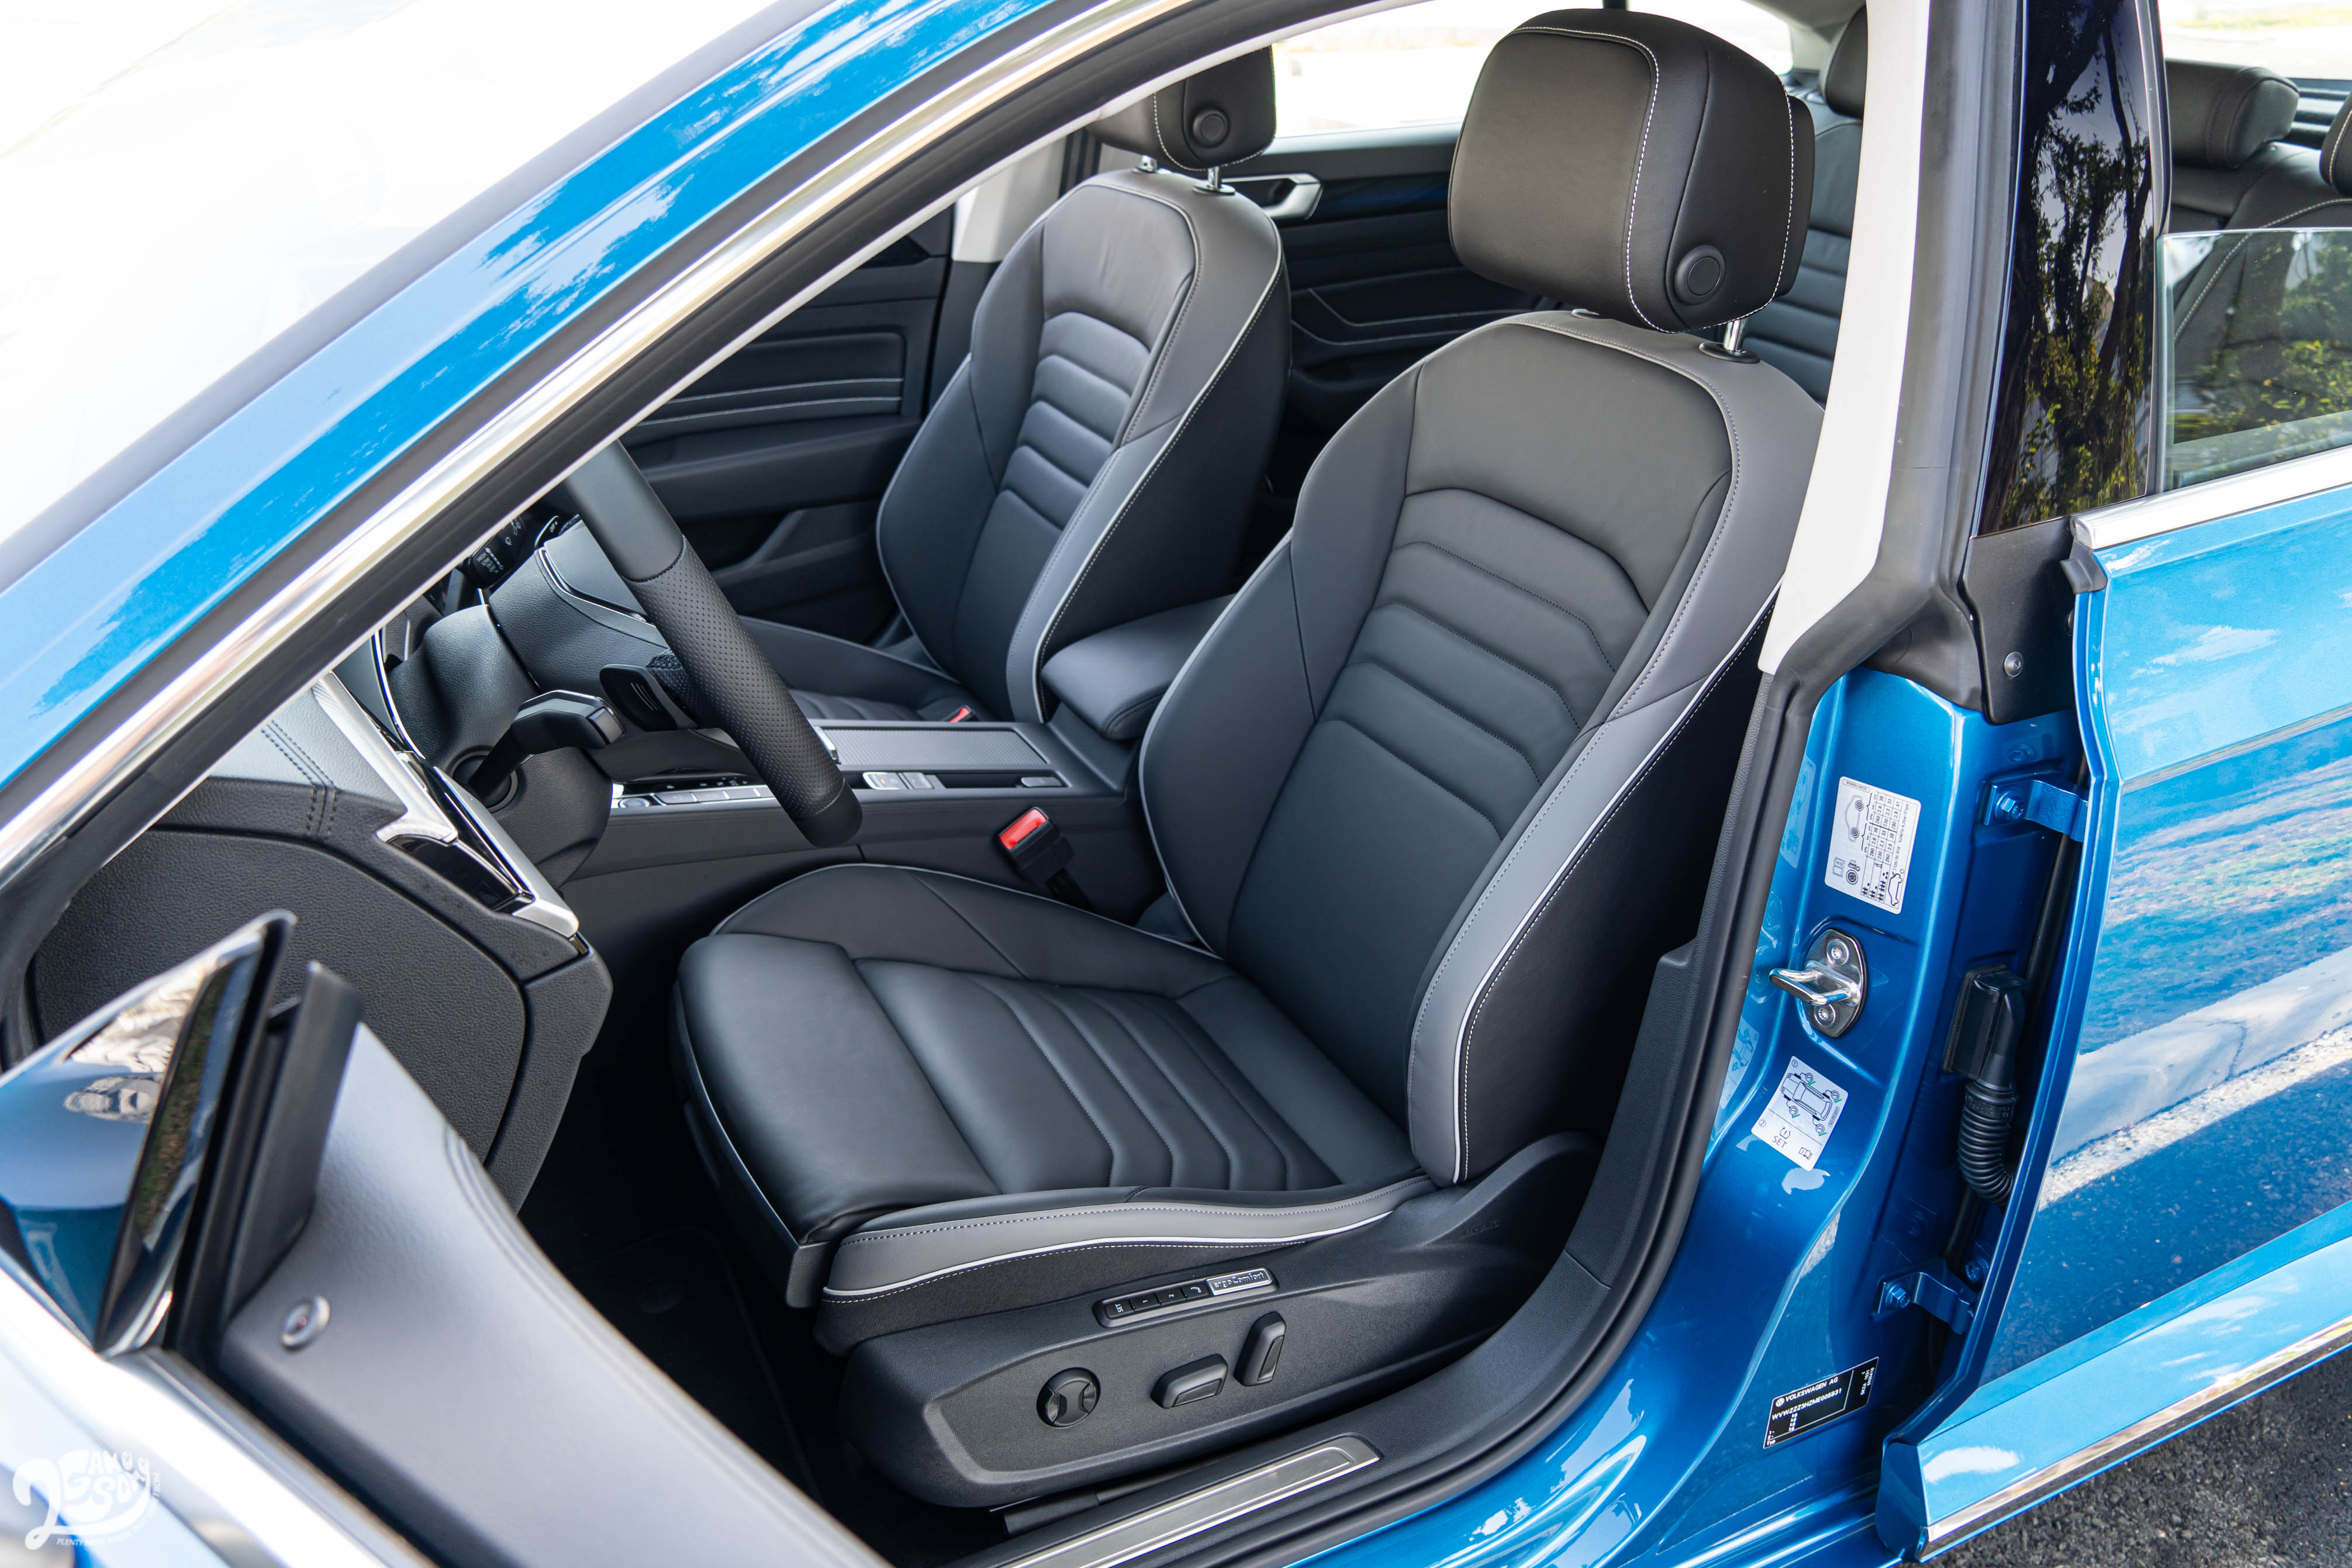 配備 Nappa 舒適真皮座椅，前後座都具備加熱功能，駕駛座並有按摩設計。